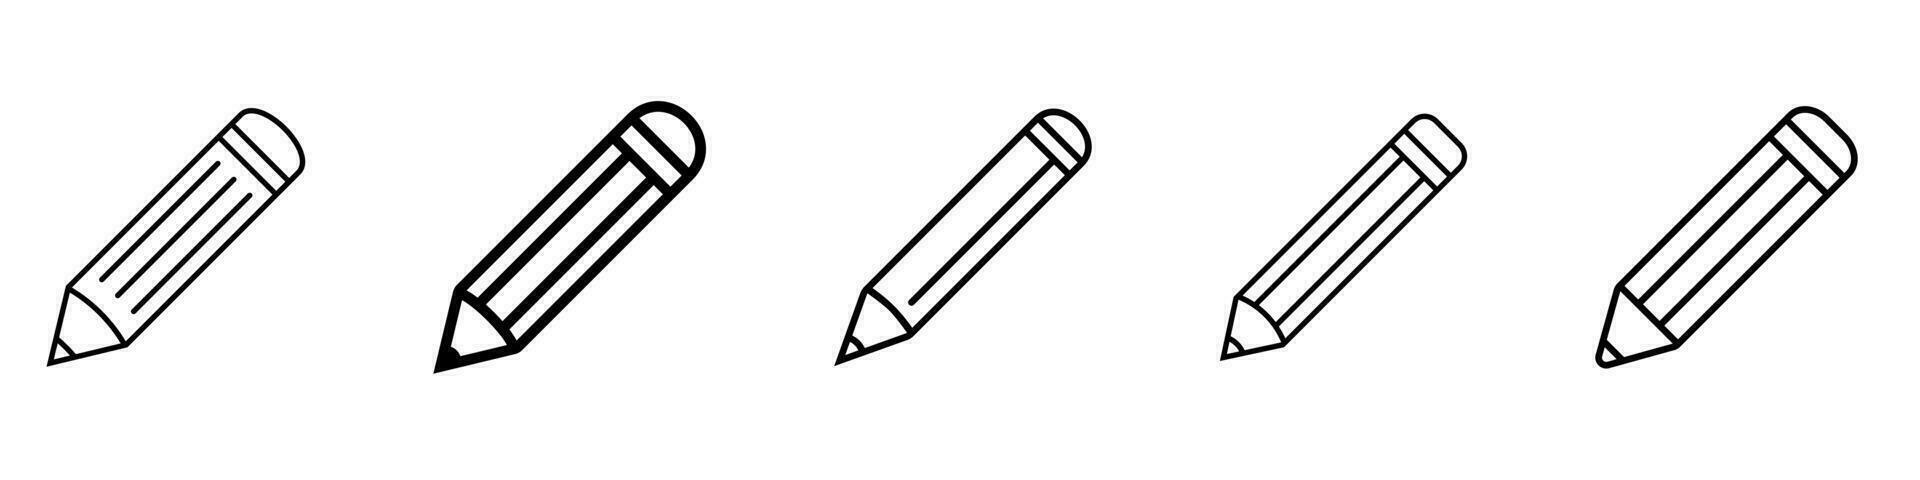 Pencil icon vector. vector